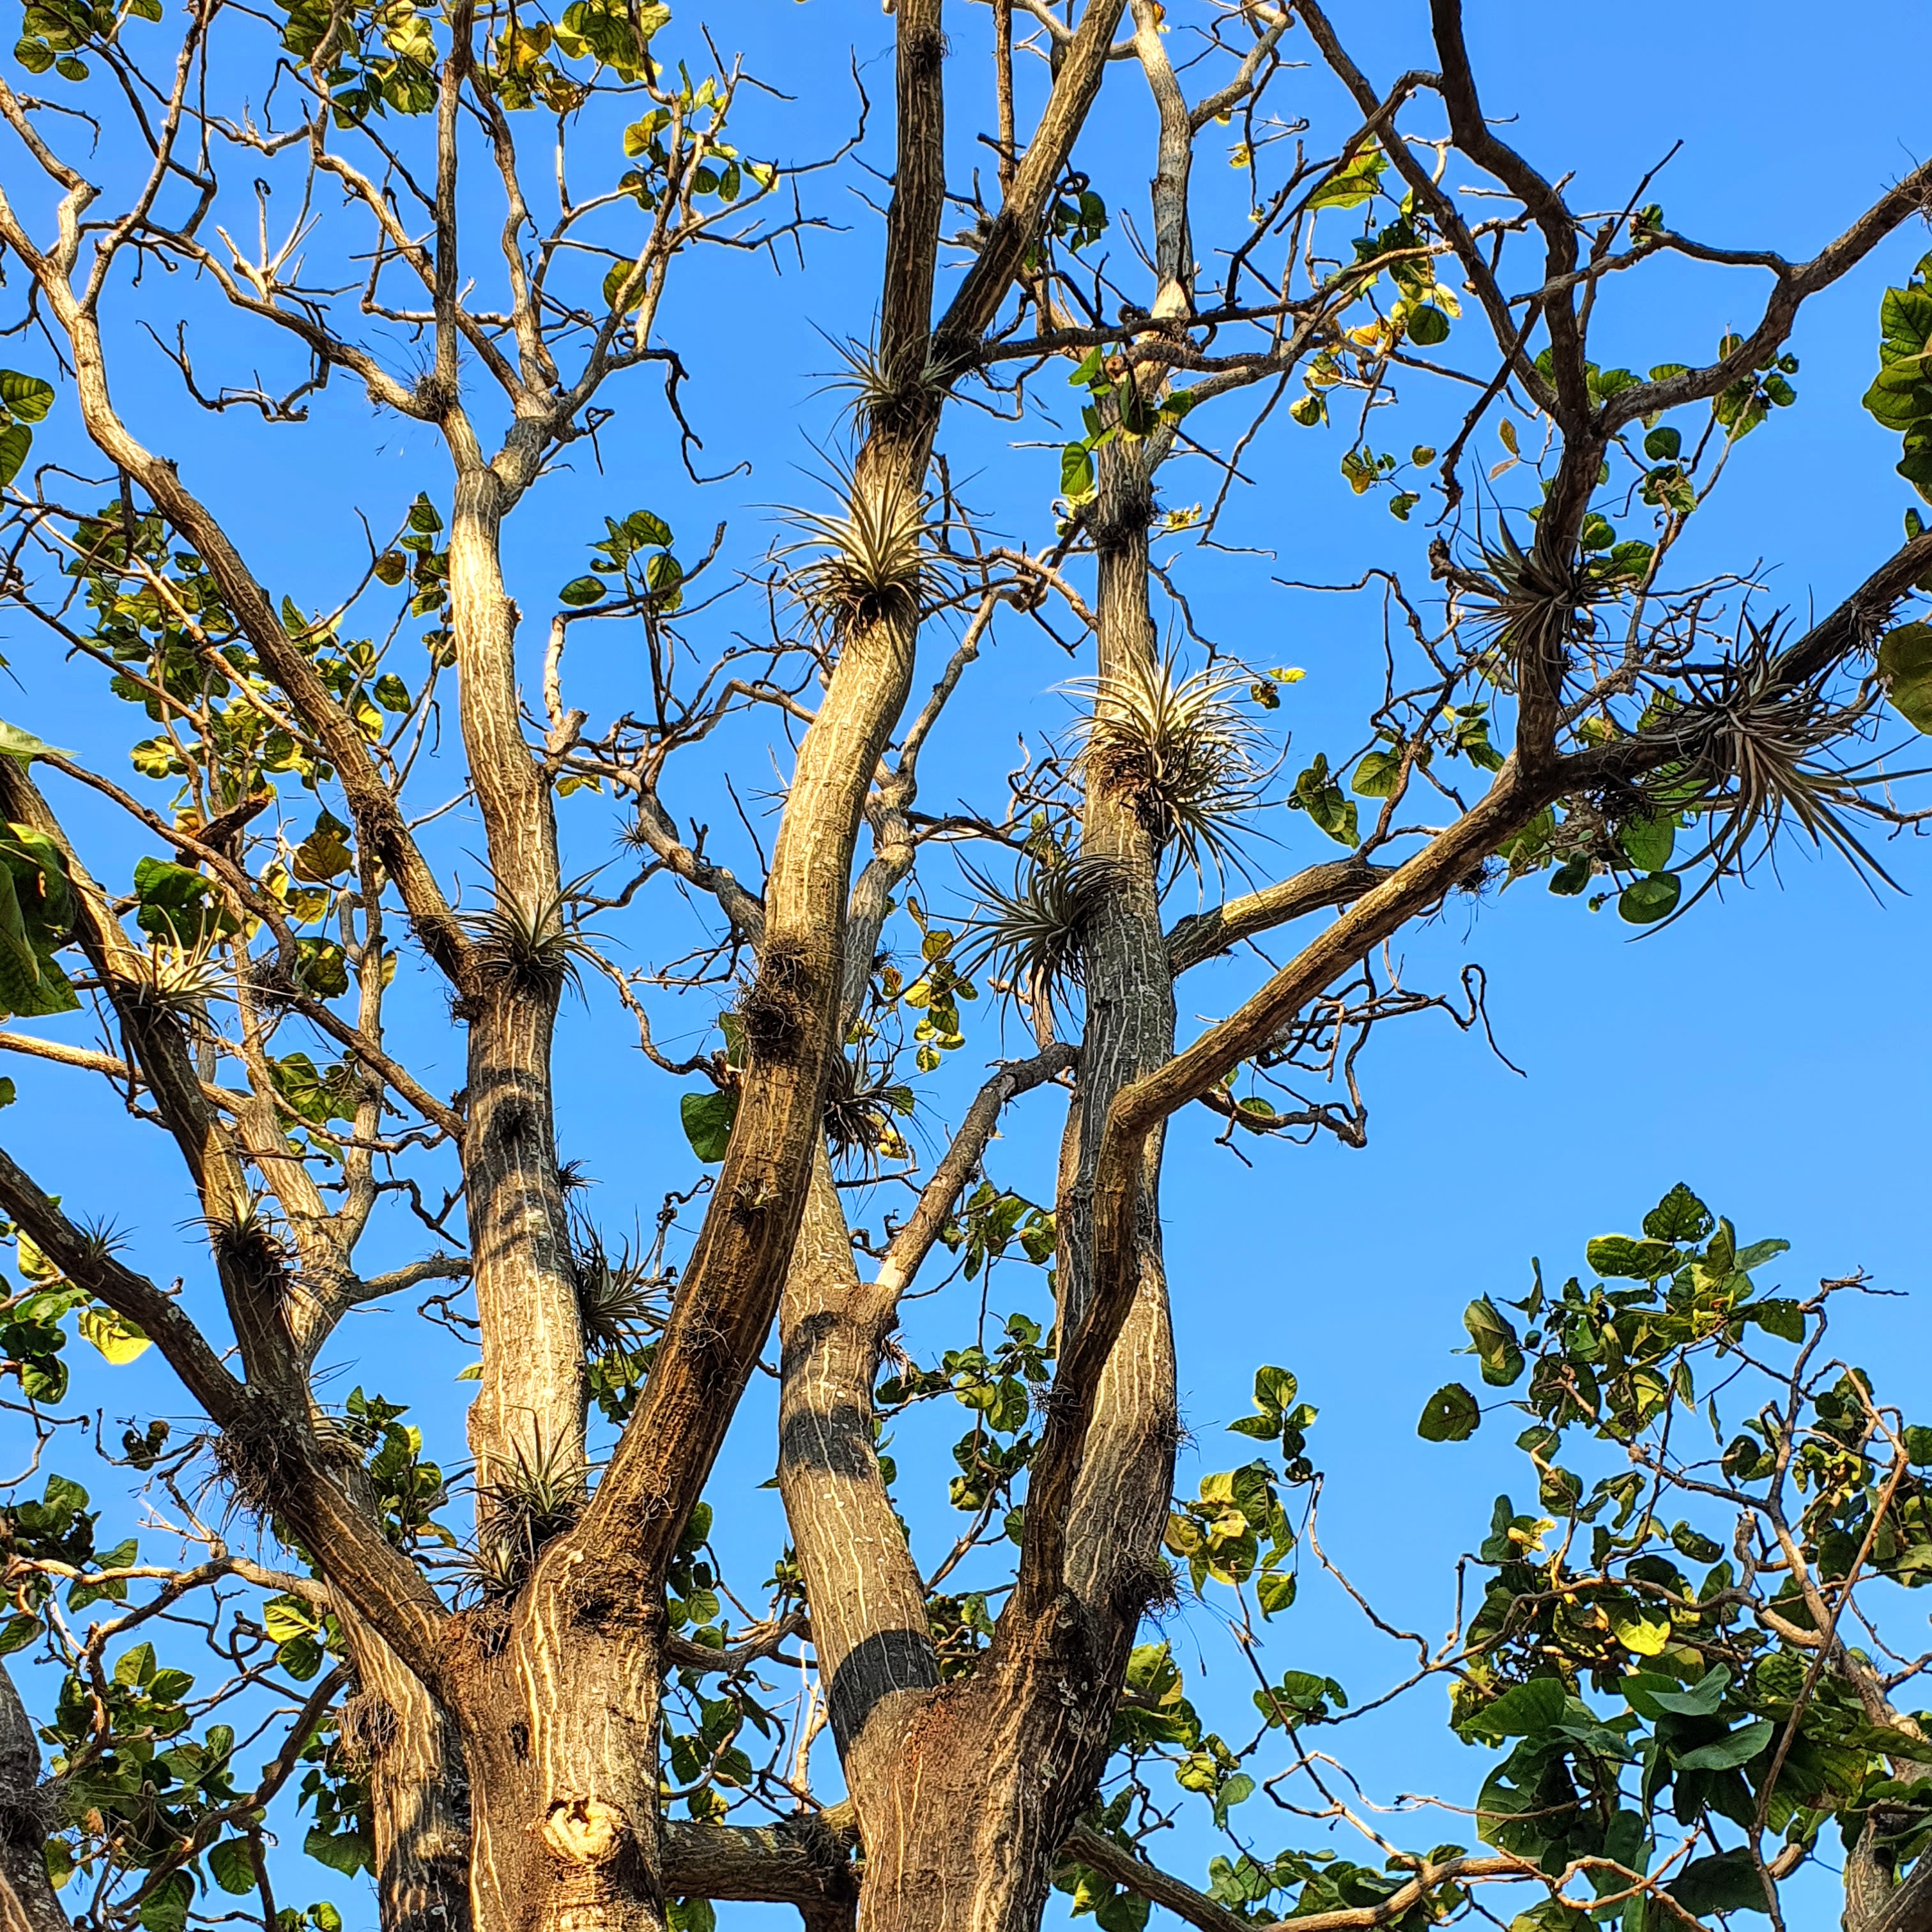 Tilândsias em árvore de Erythrina sp.